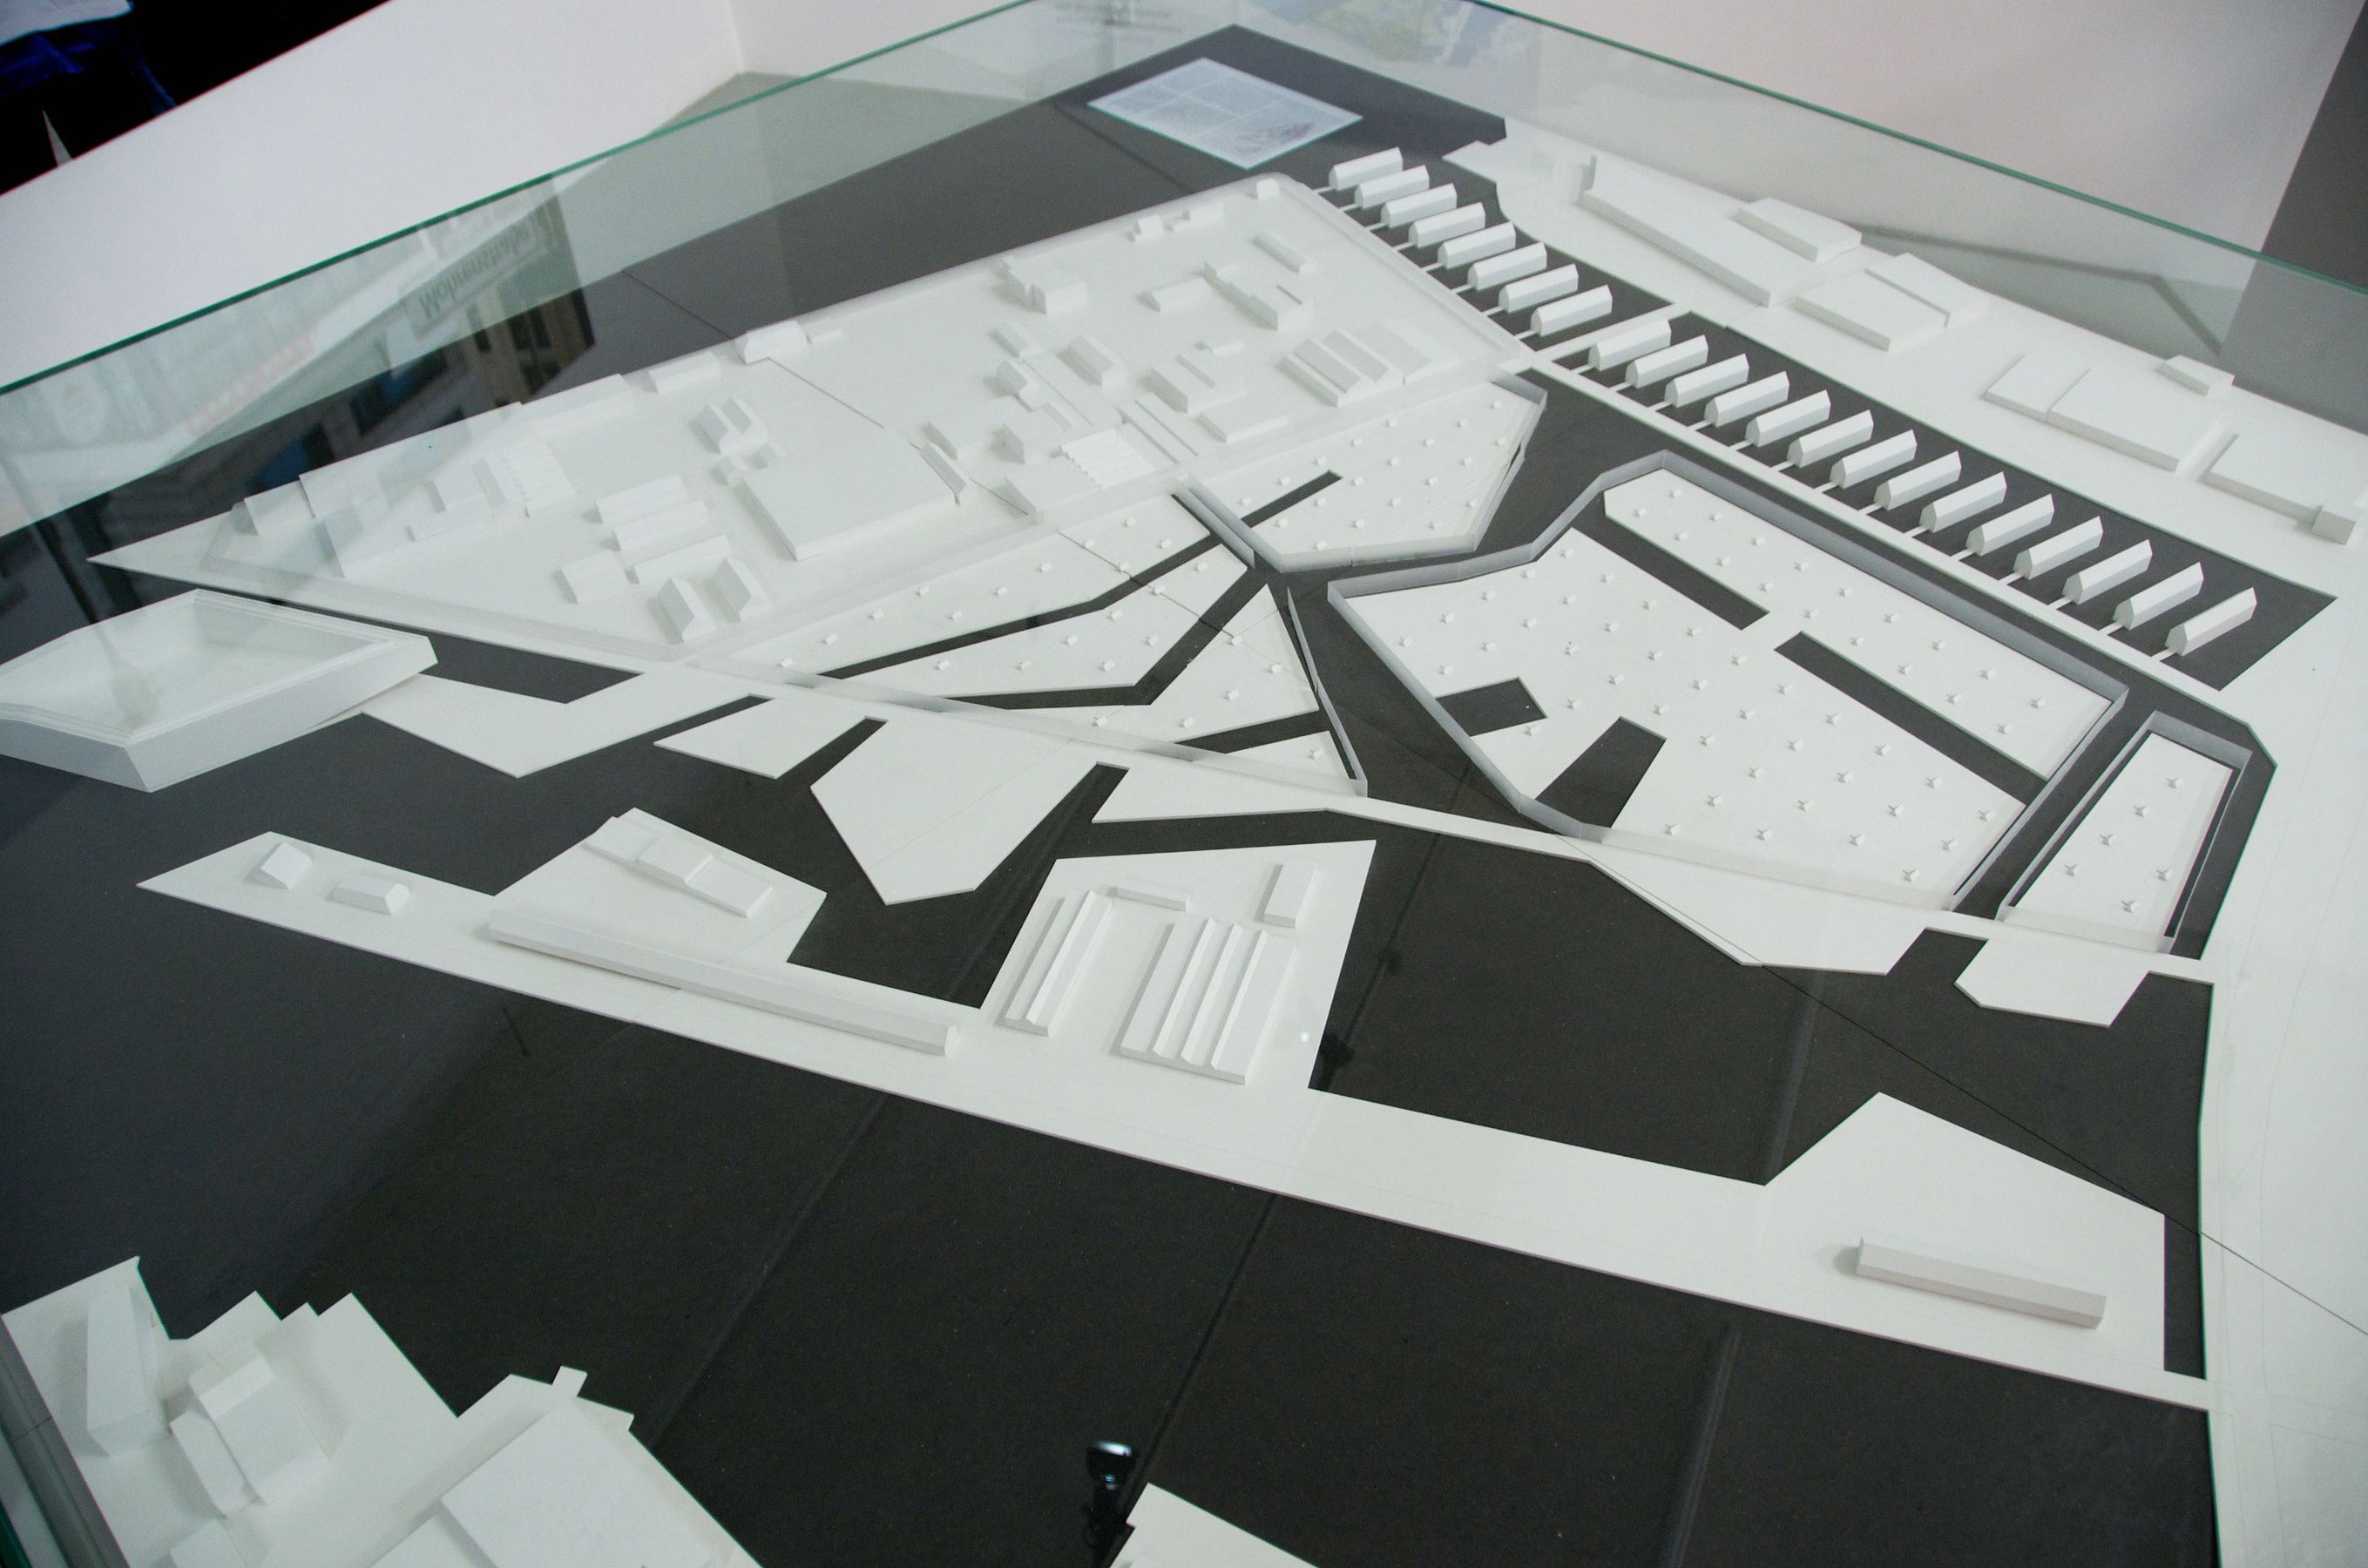 Closed Architecture (architectural model), 2011 Architectural model 200 × 200 cm;